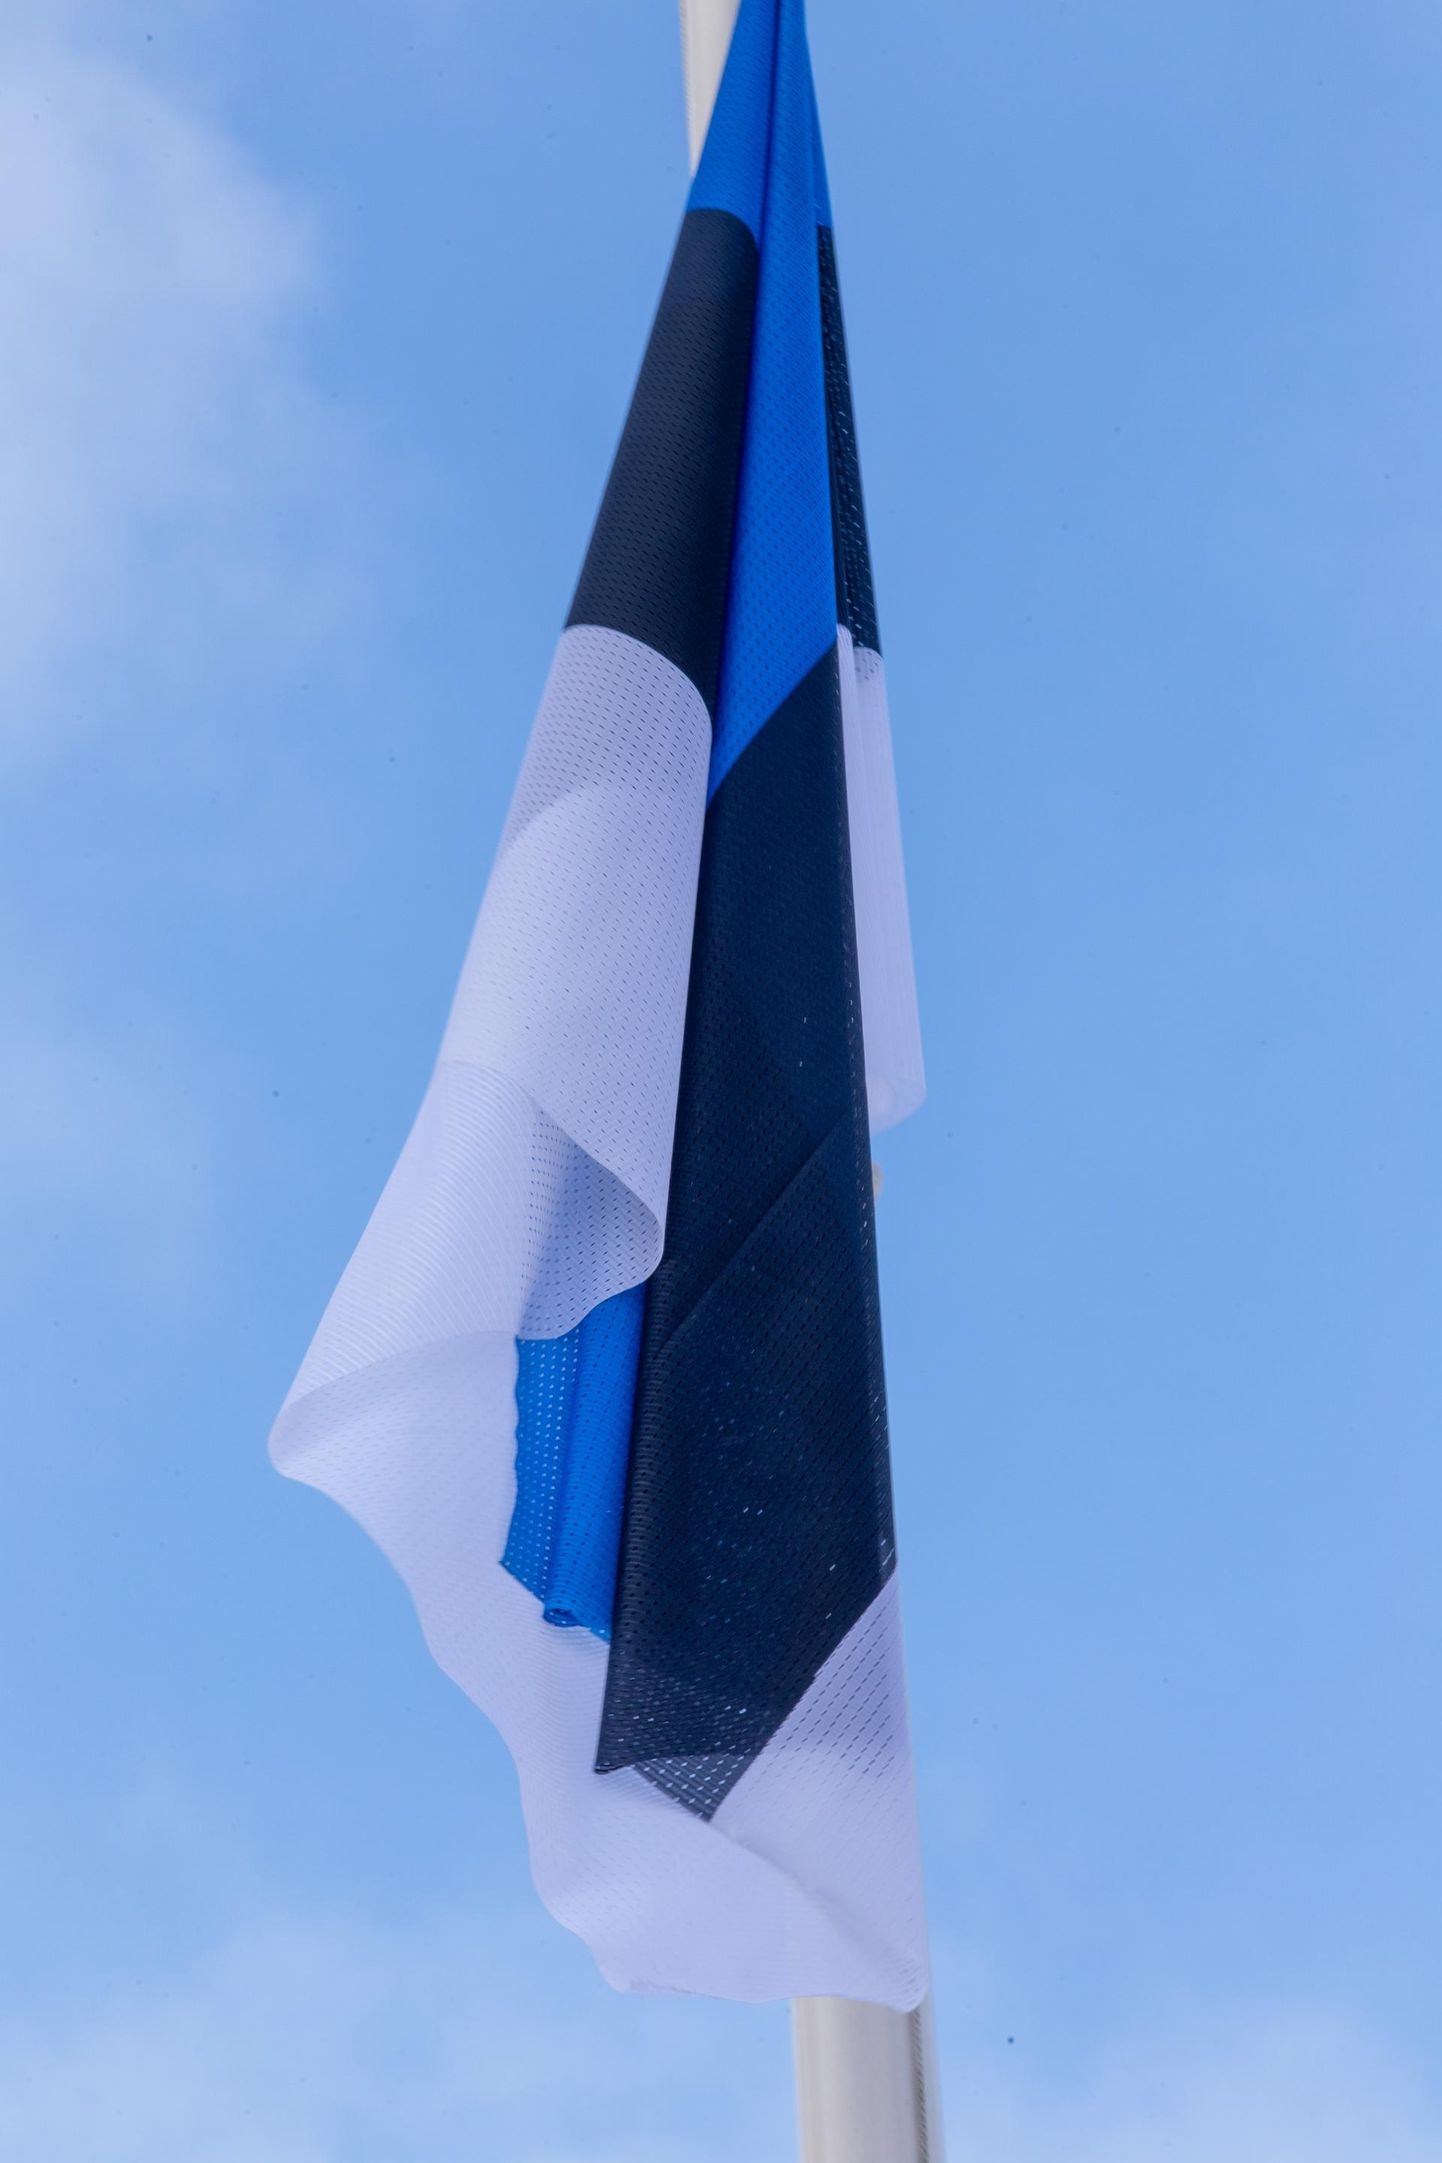 Pühapäeval on asjakohane heisata Eesti lipp.